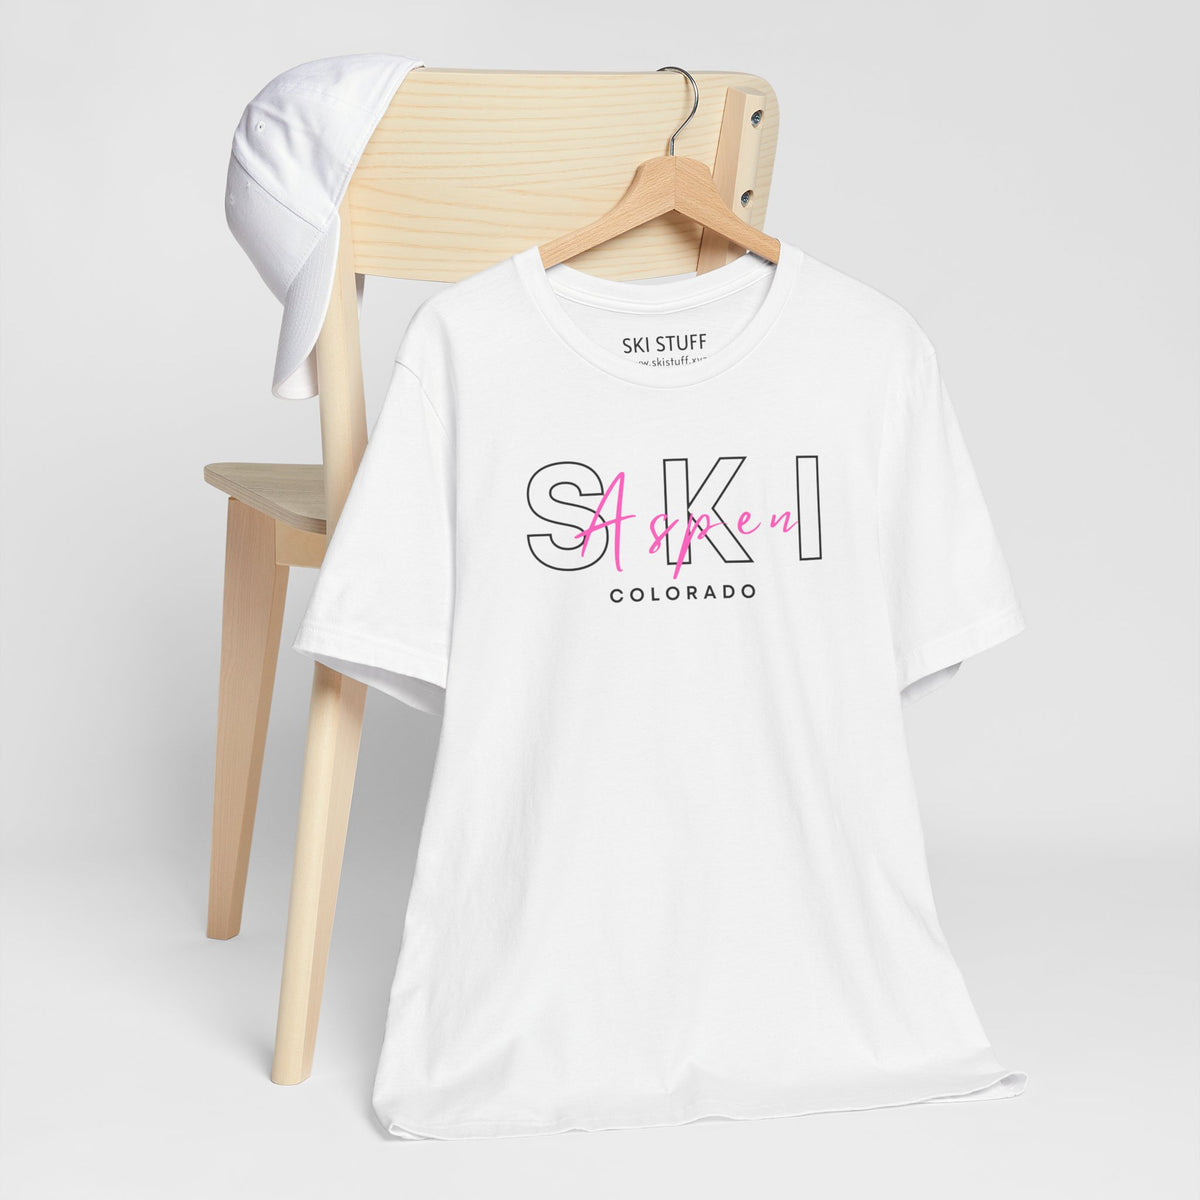 Skiing T-Shirts